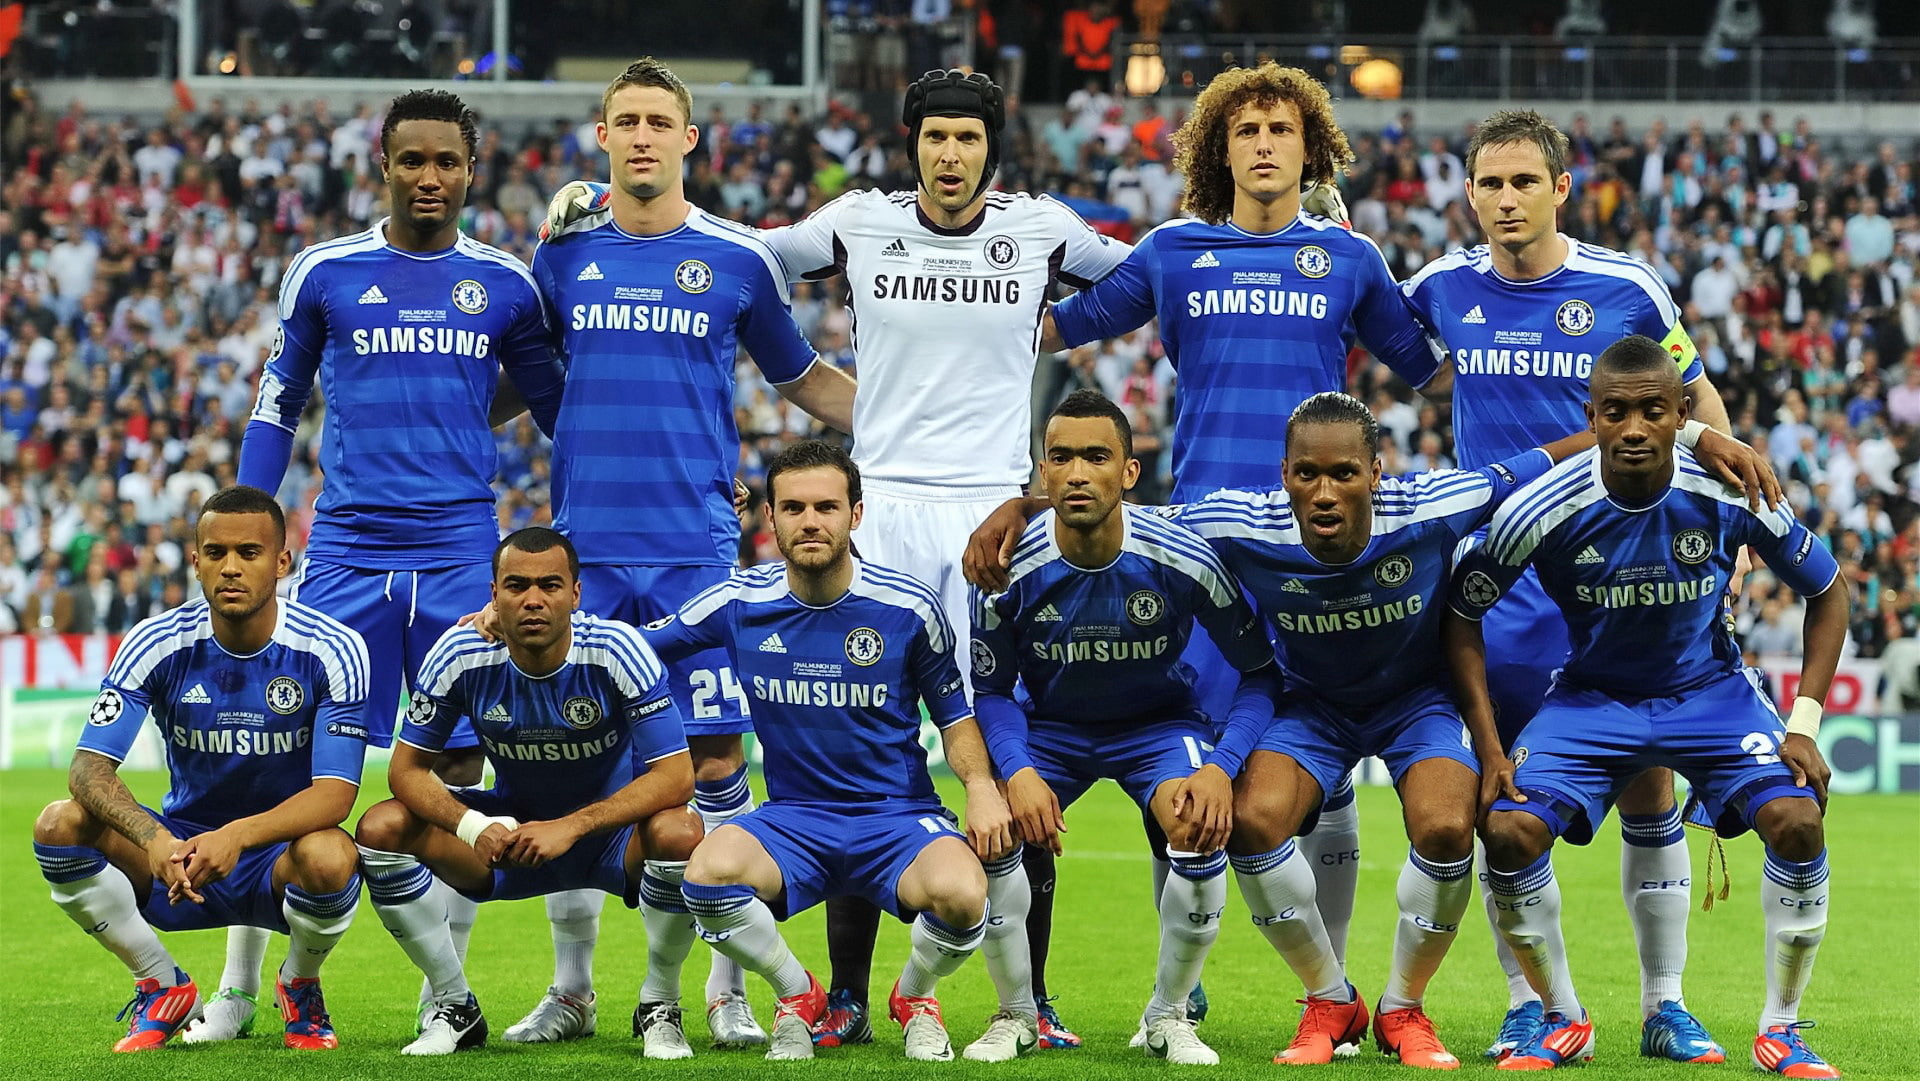 men's blue Samsung jersey, Chelsea FC, Champions League Final